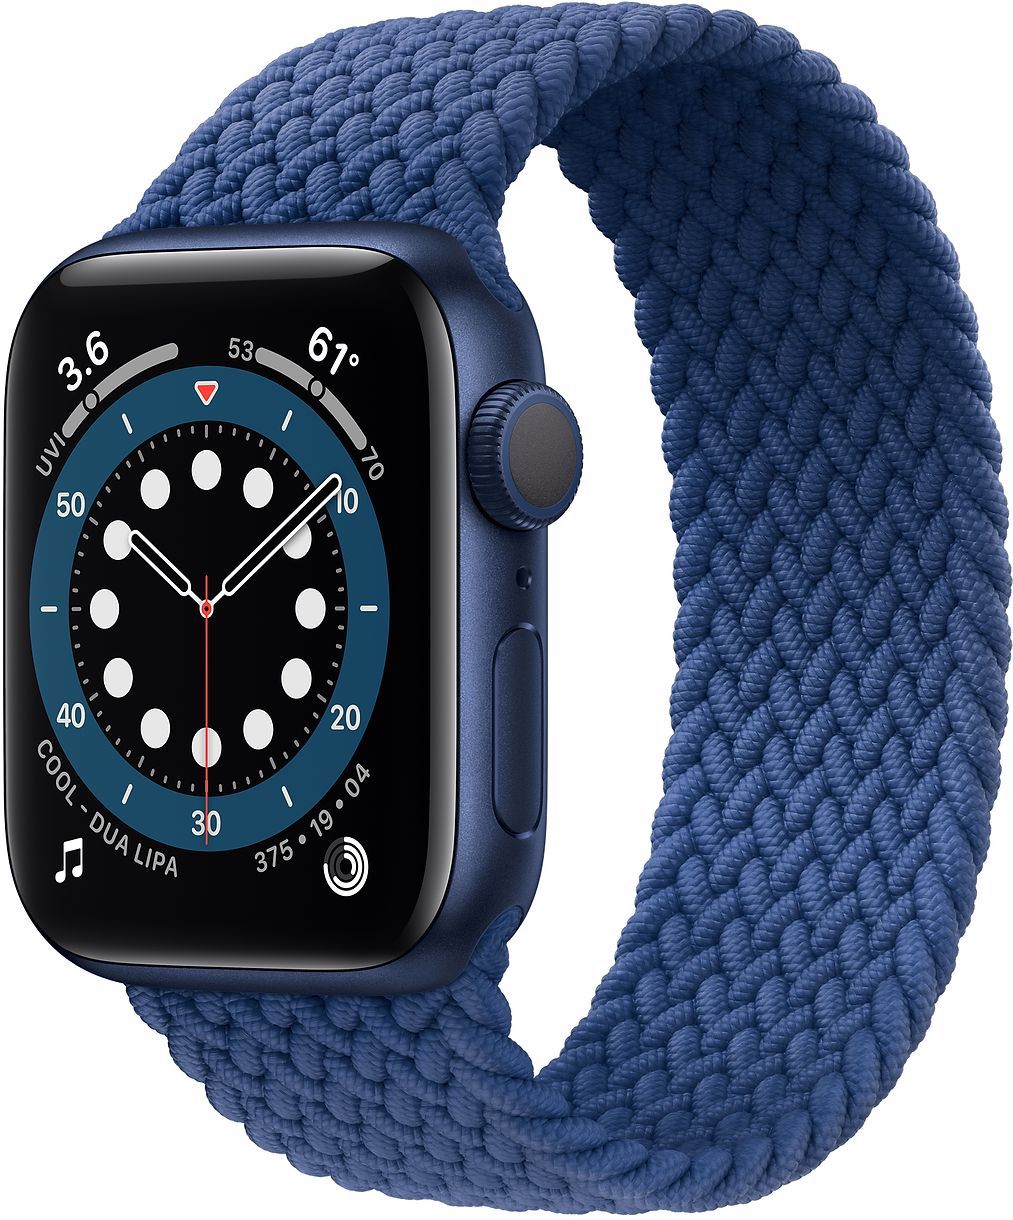 Apple Watch Series 6 Blue Braided Solo Loop